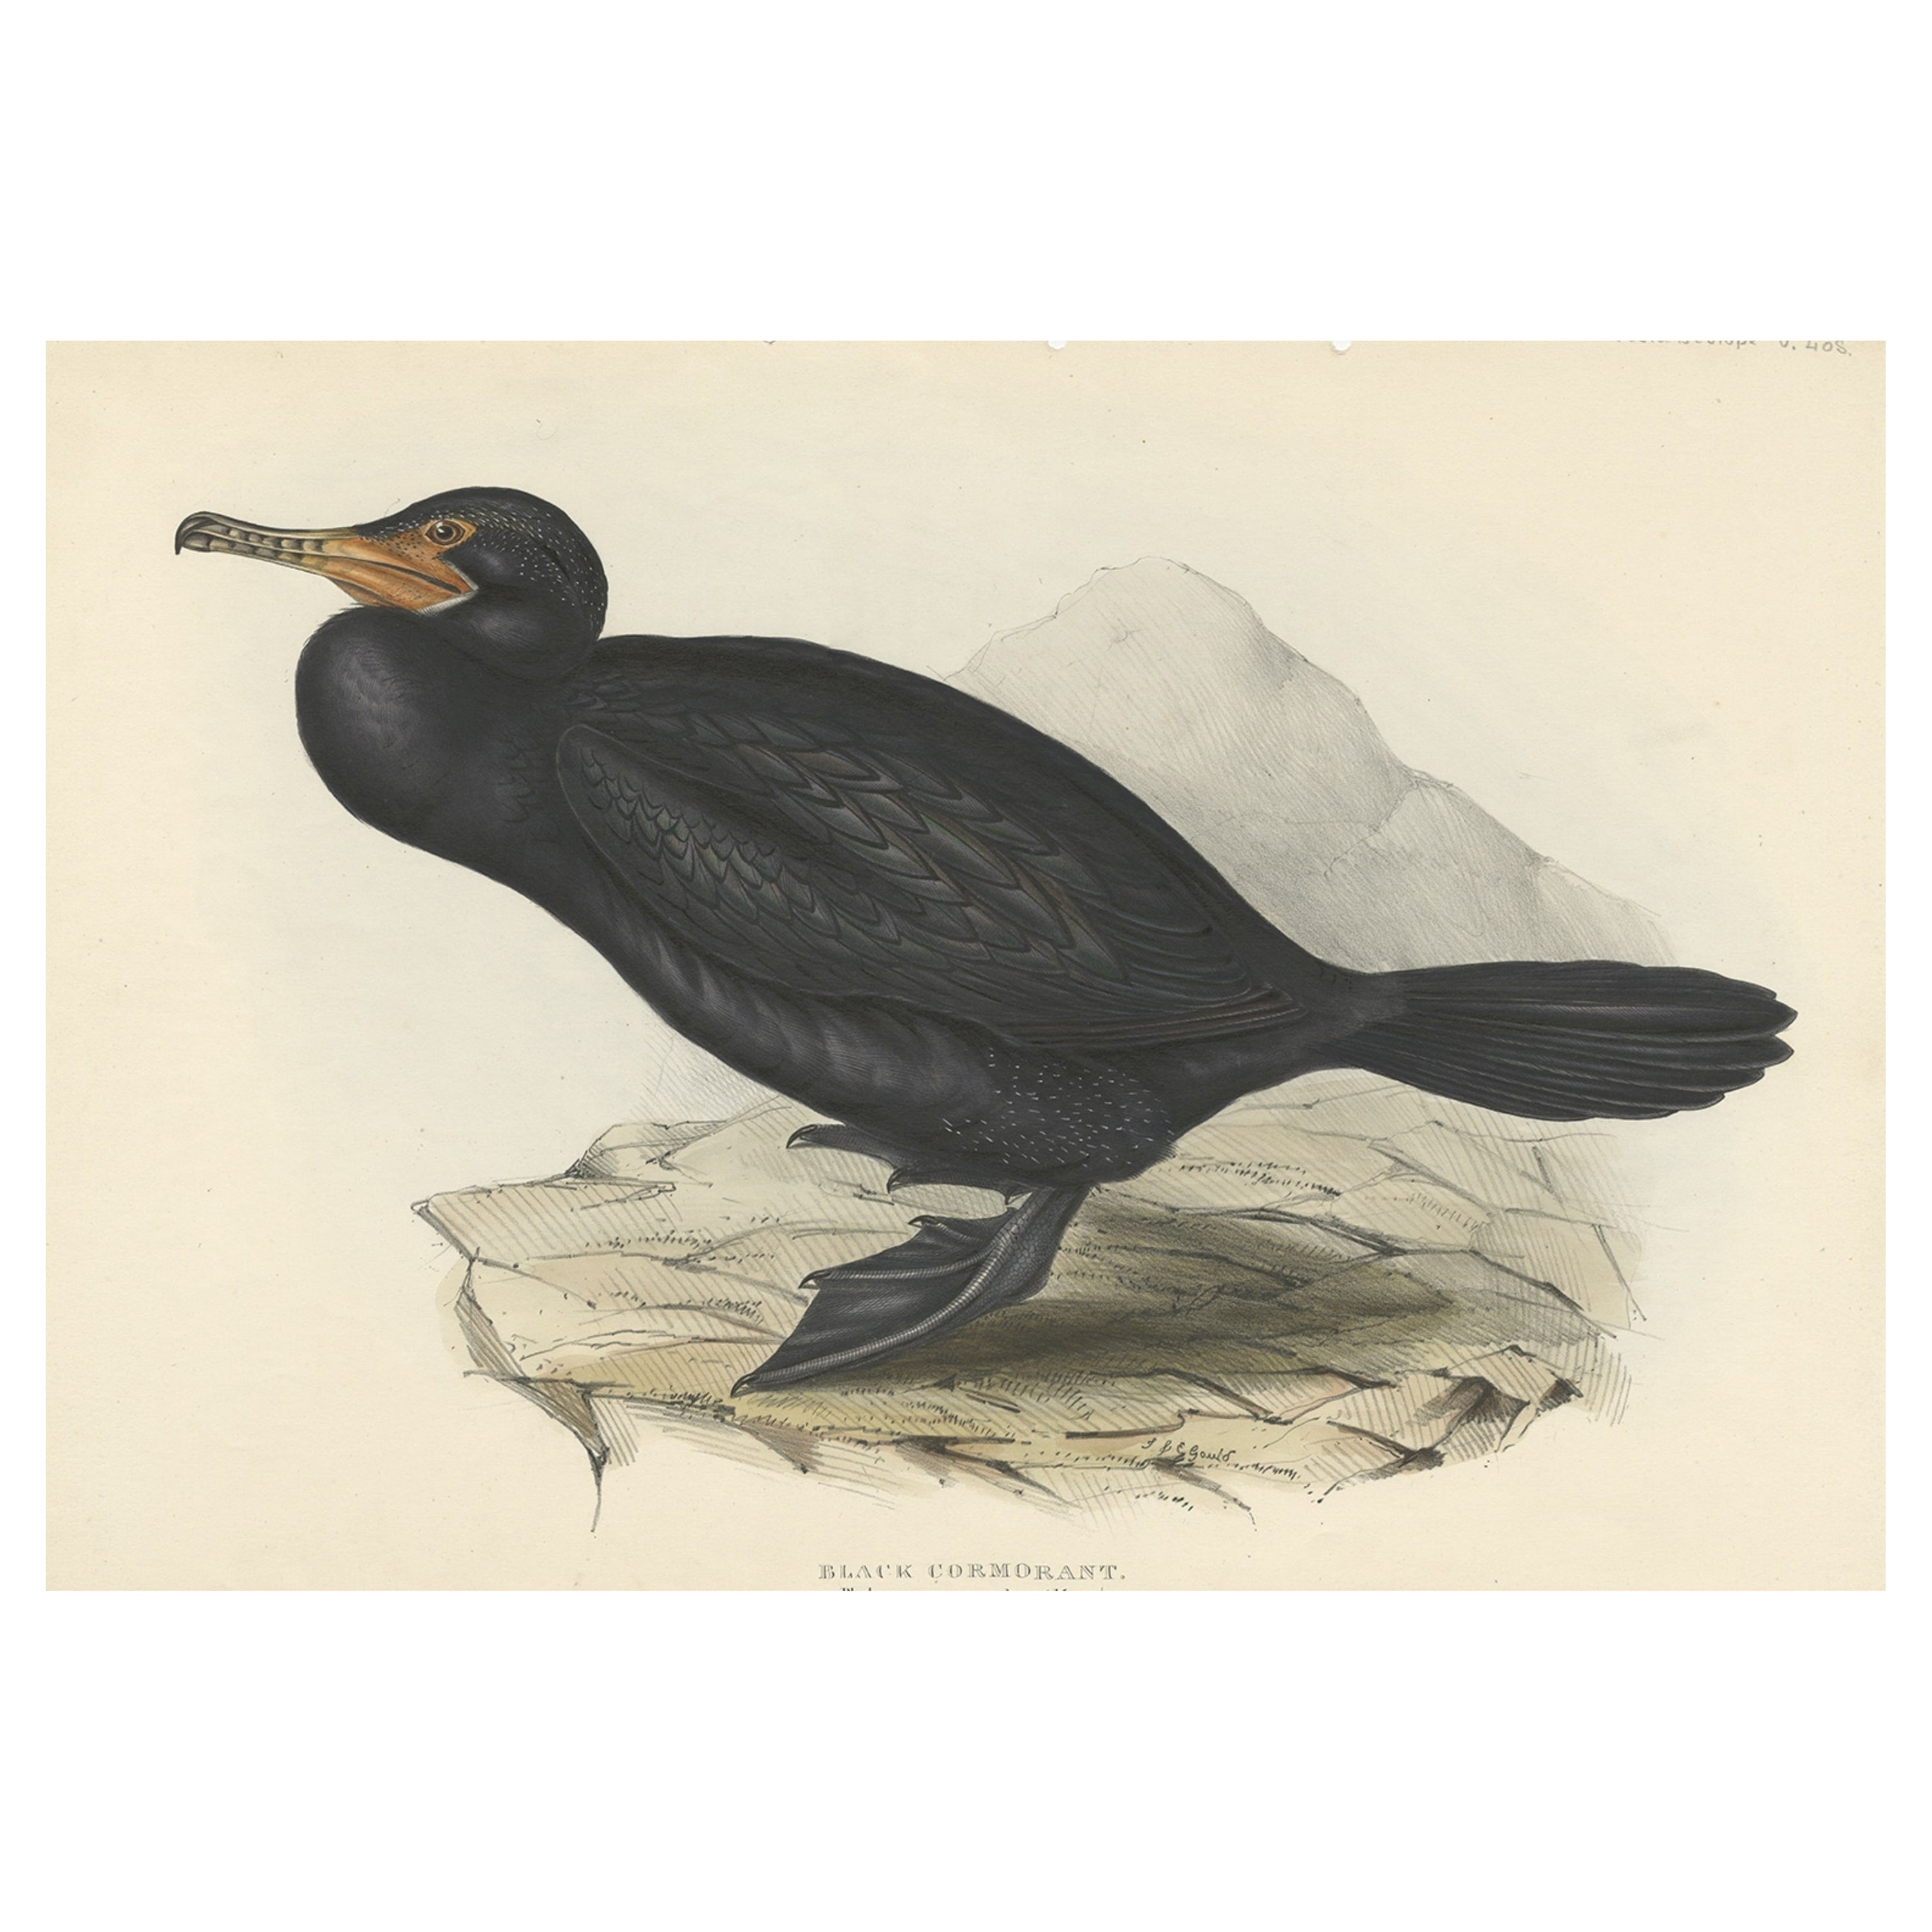 Antiker Vogeldruck des großen Kormoranten oder schwarzen Stuhls, 1832